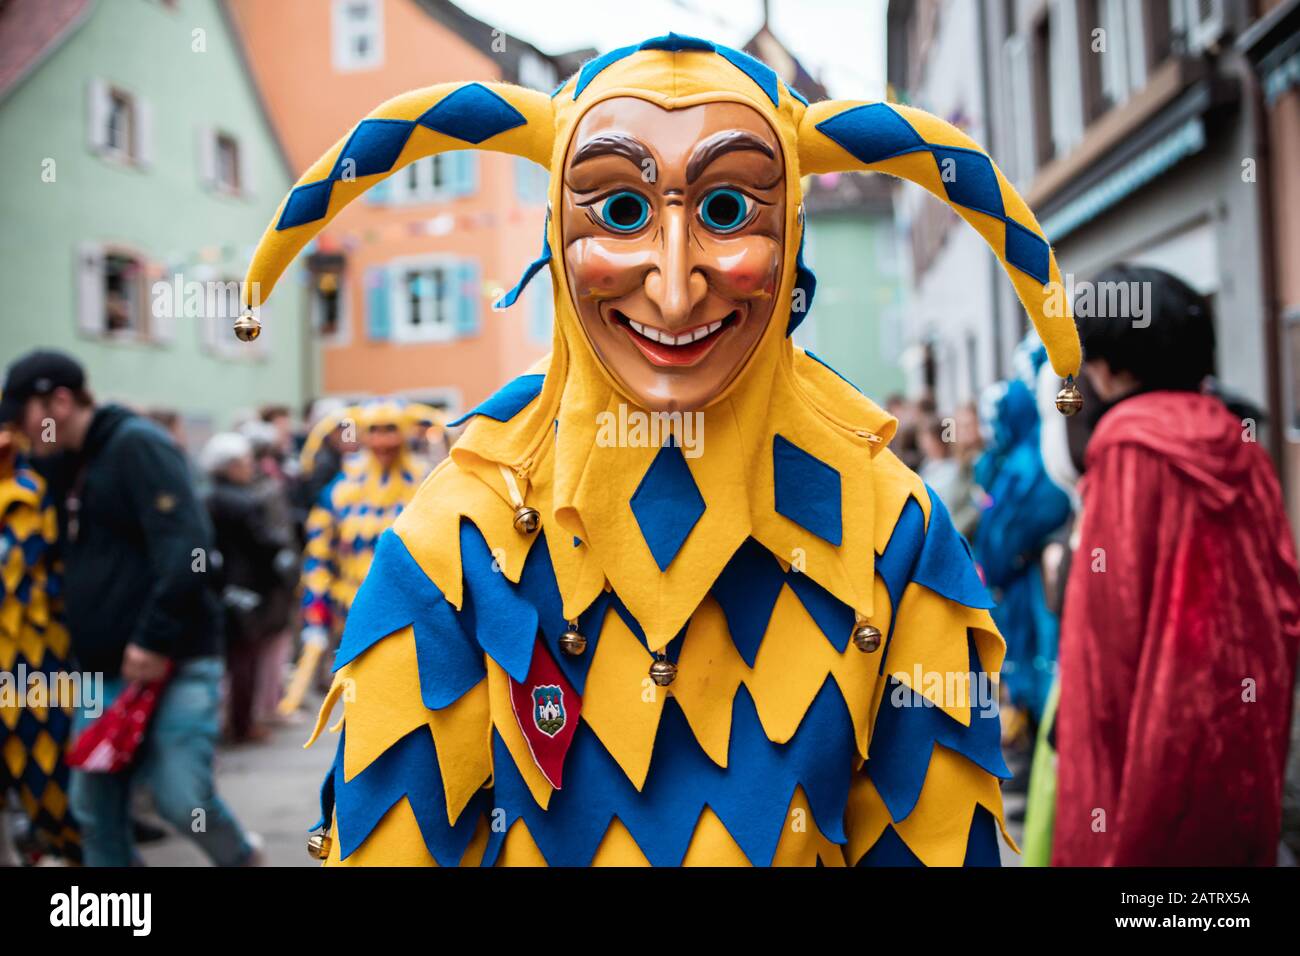 Bajass da Waldkirch - bella figura sciocco in una veste giallo-blu con una curiosa espressione sulla sfilata di carnevale a Staufen, Germania meridionale Foto Stock